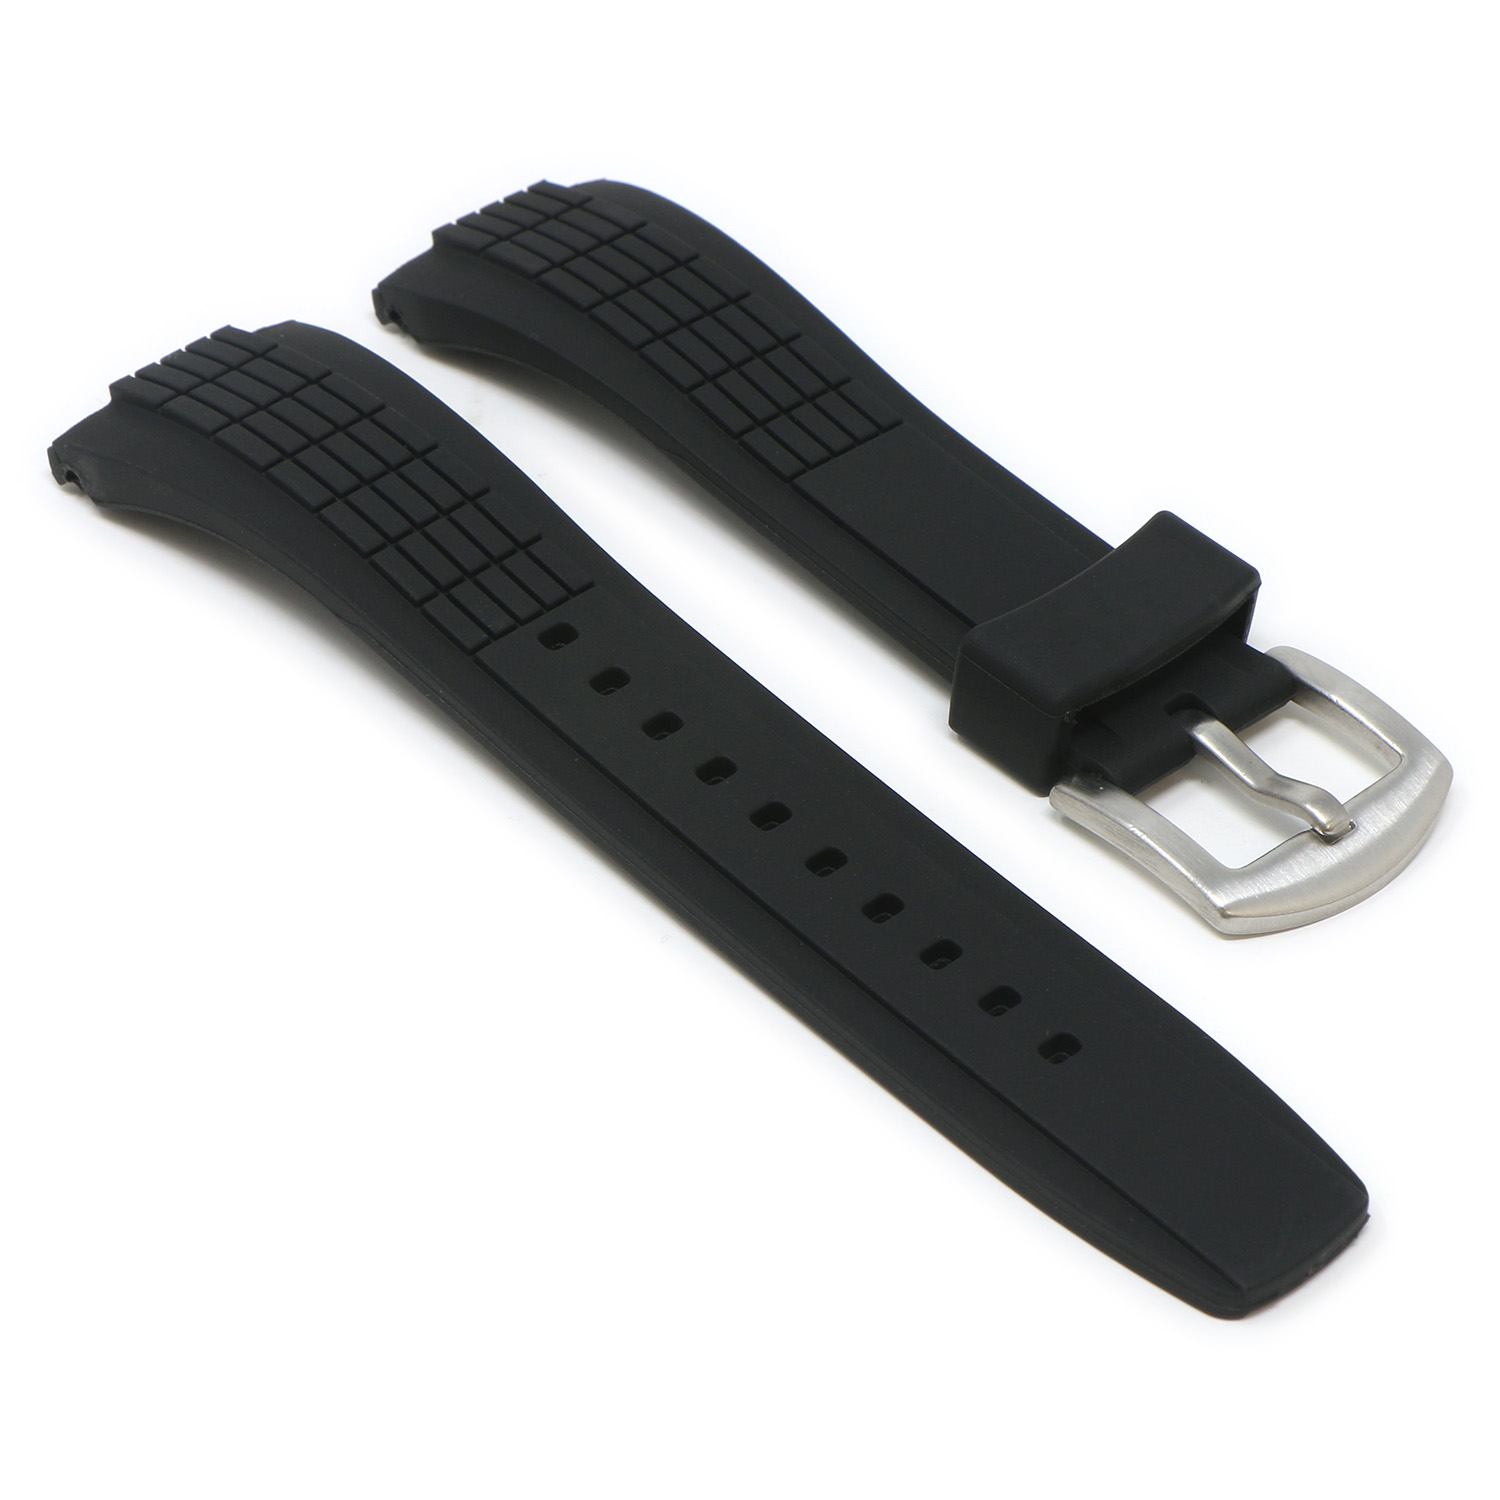 StrapsCo Black W Silver Buckle Angle Silicone Rubber Watch Band Strap For Seiko Velatura